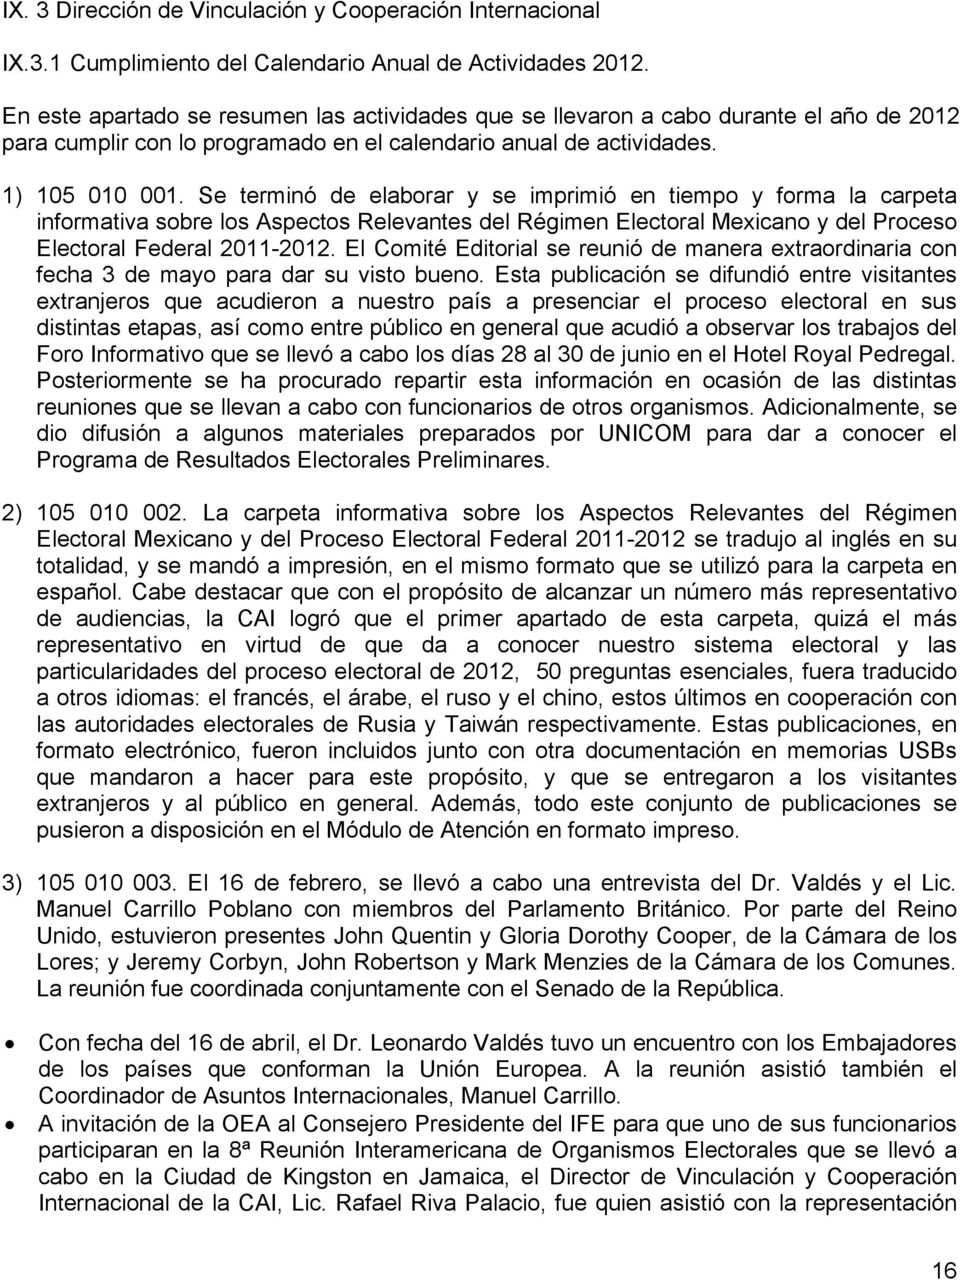 Se terminó de elaborar y se imprimió en tiempo y forma la carpeta informativa sobre los Aspectos Relevantes del Régimen Electoral Mexicano y del Proceso Electoral Federal 2011-2012.